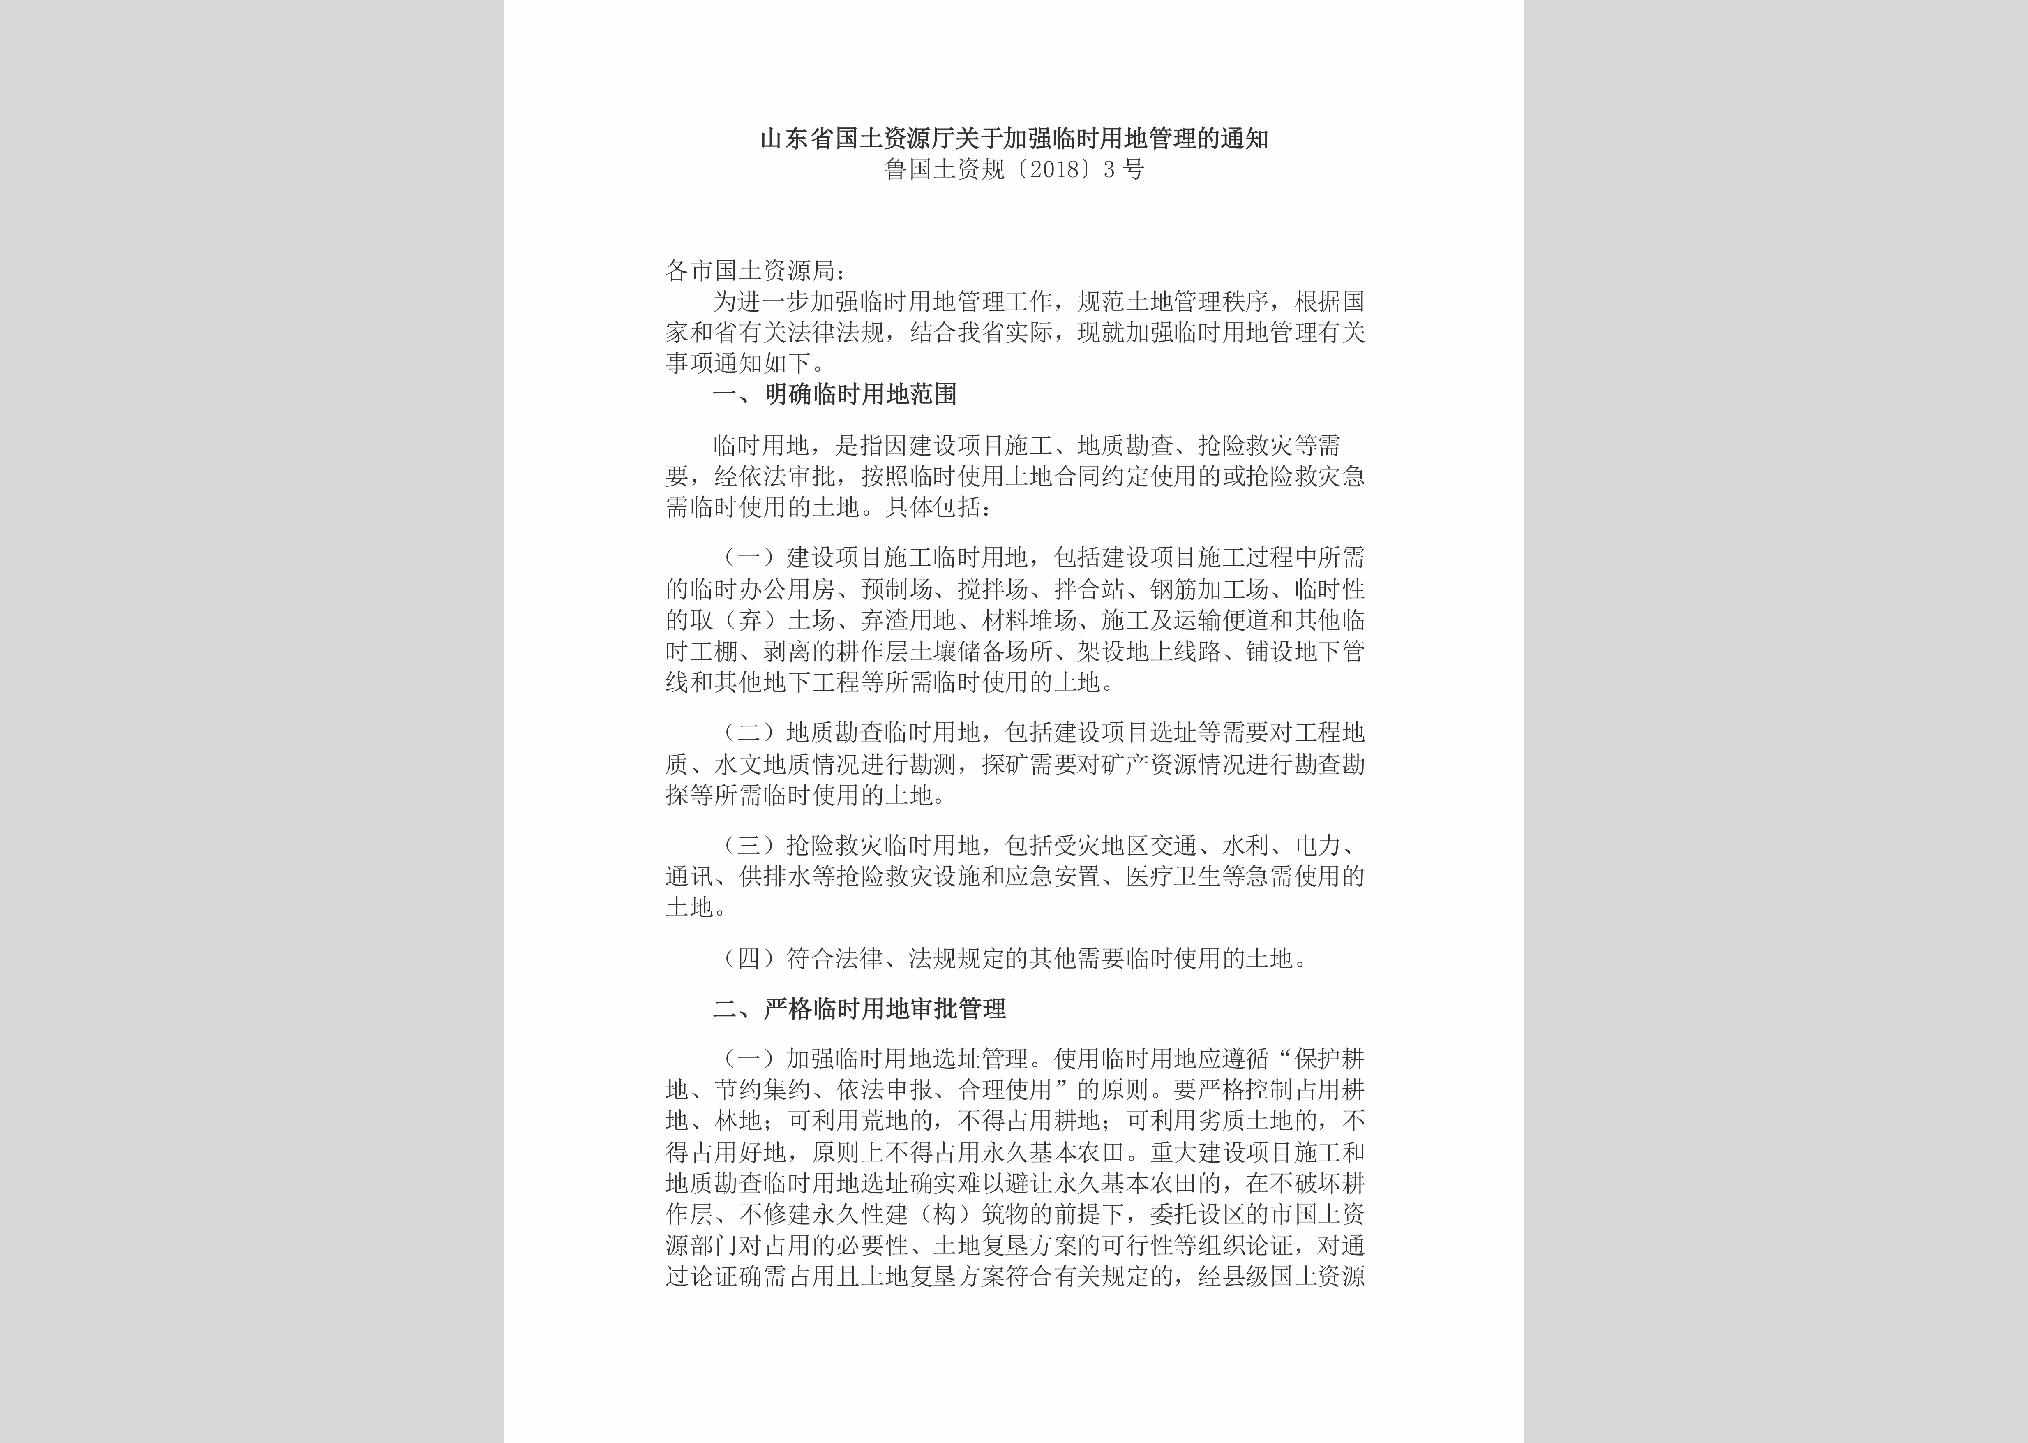 鲁国土资规[2018]3号：山东省国土资源厅关于加强临时用地管理的通知